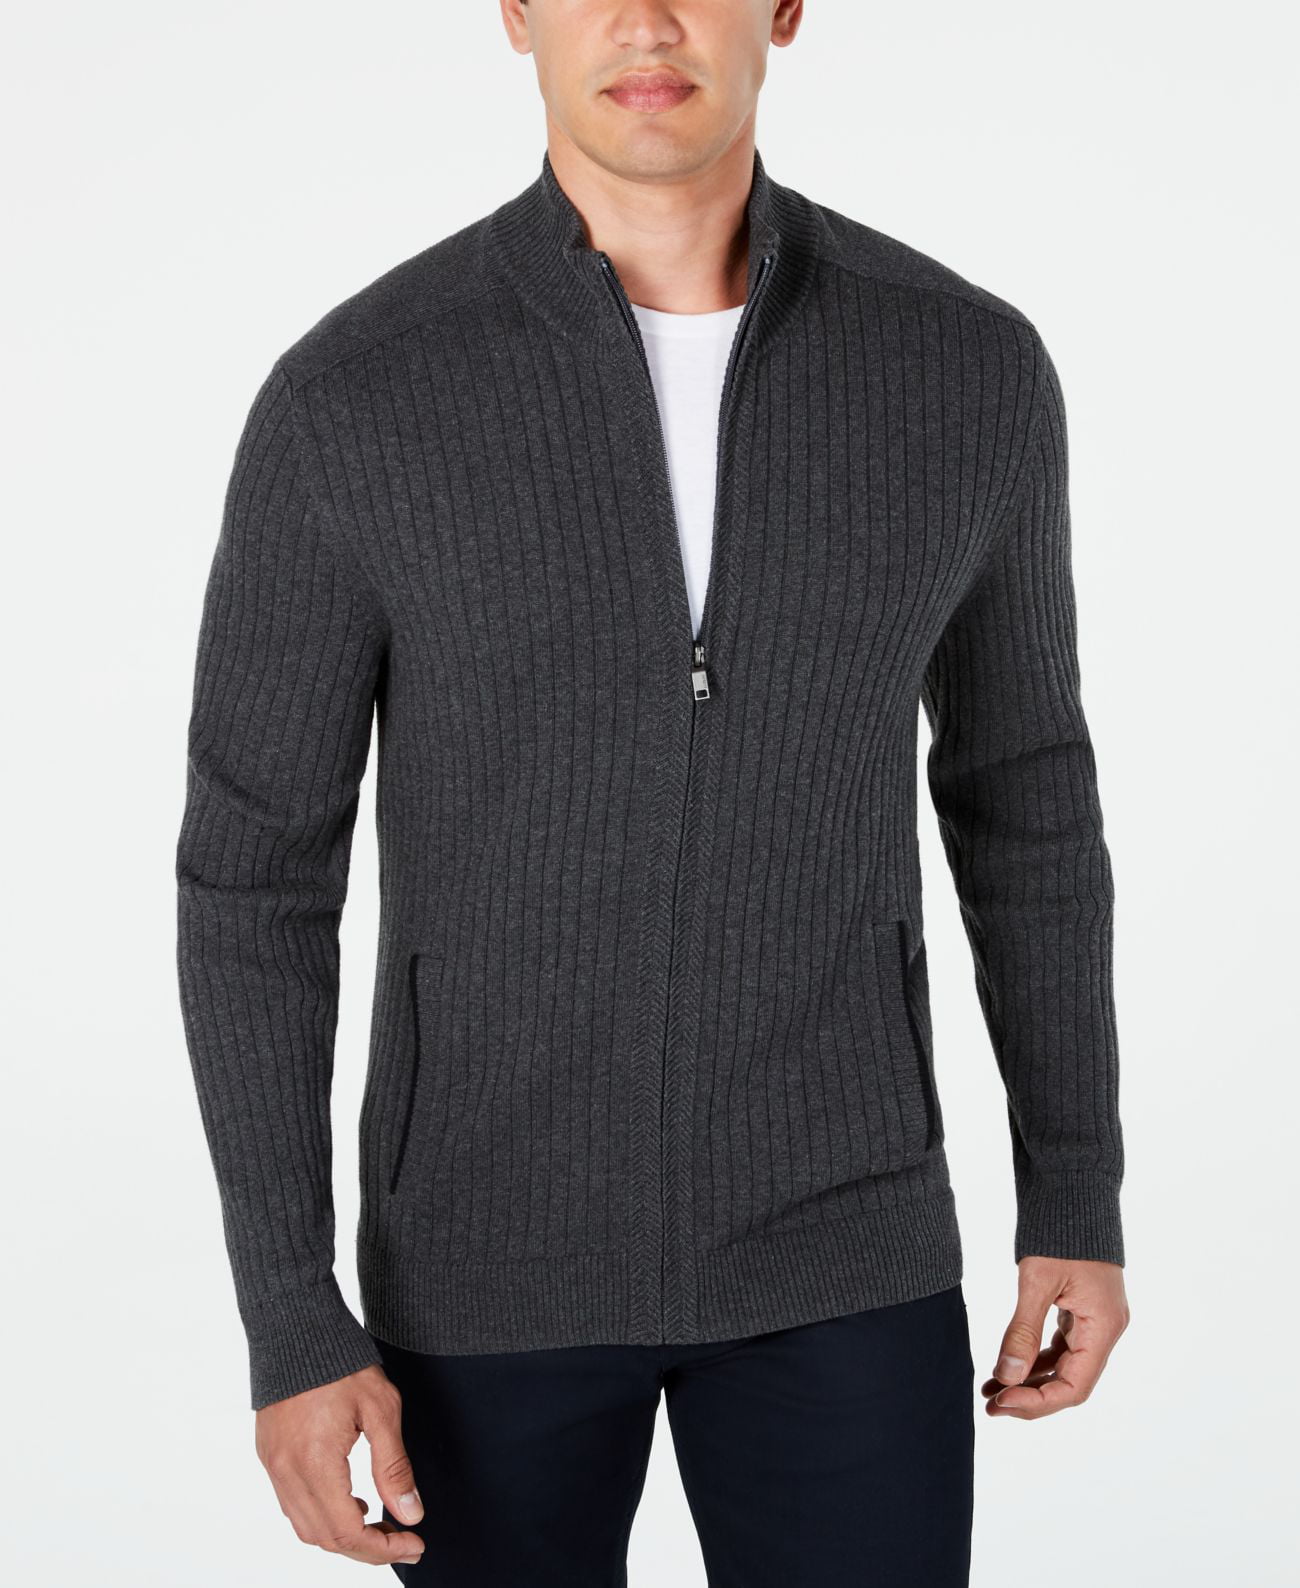 Alfani Men’s Ribbed Full-Zip Sweater, Dark Gray/L - Walmart.com